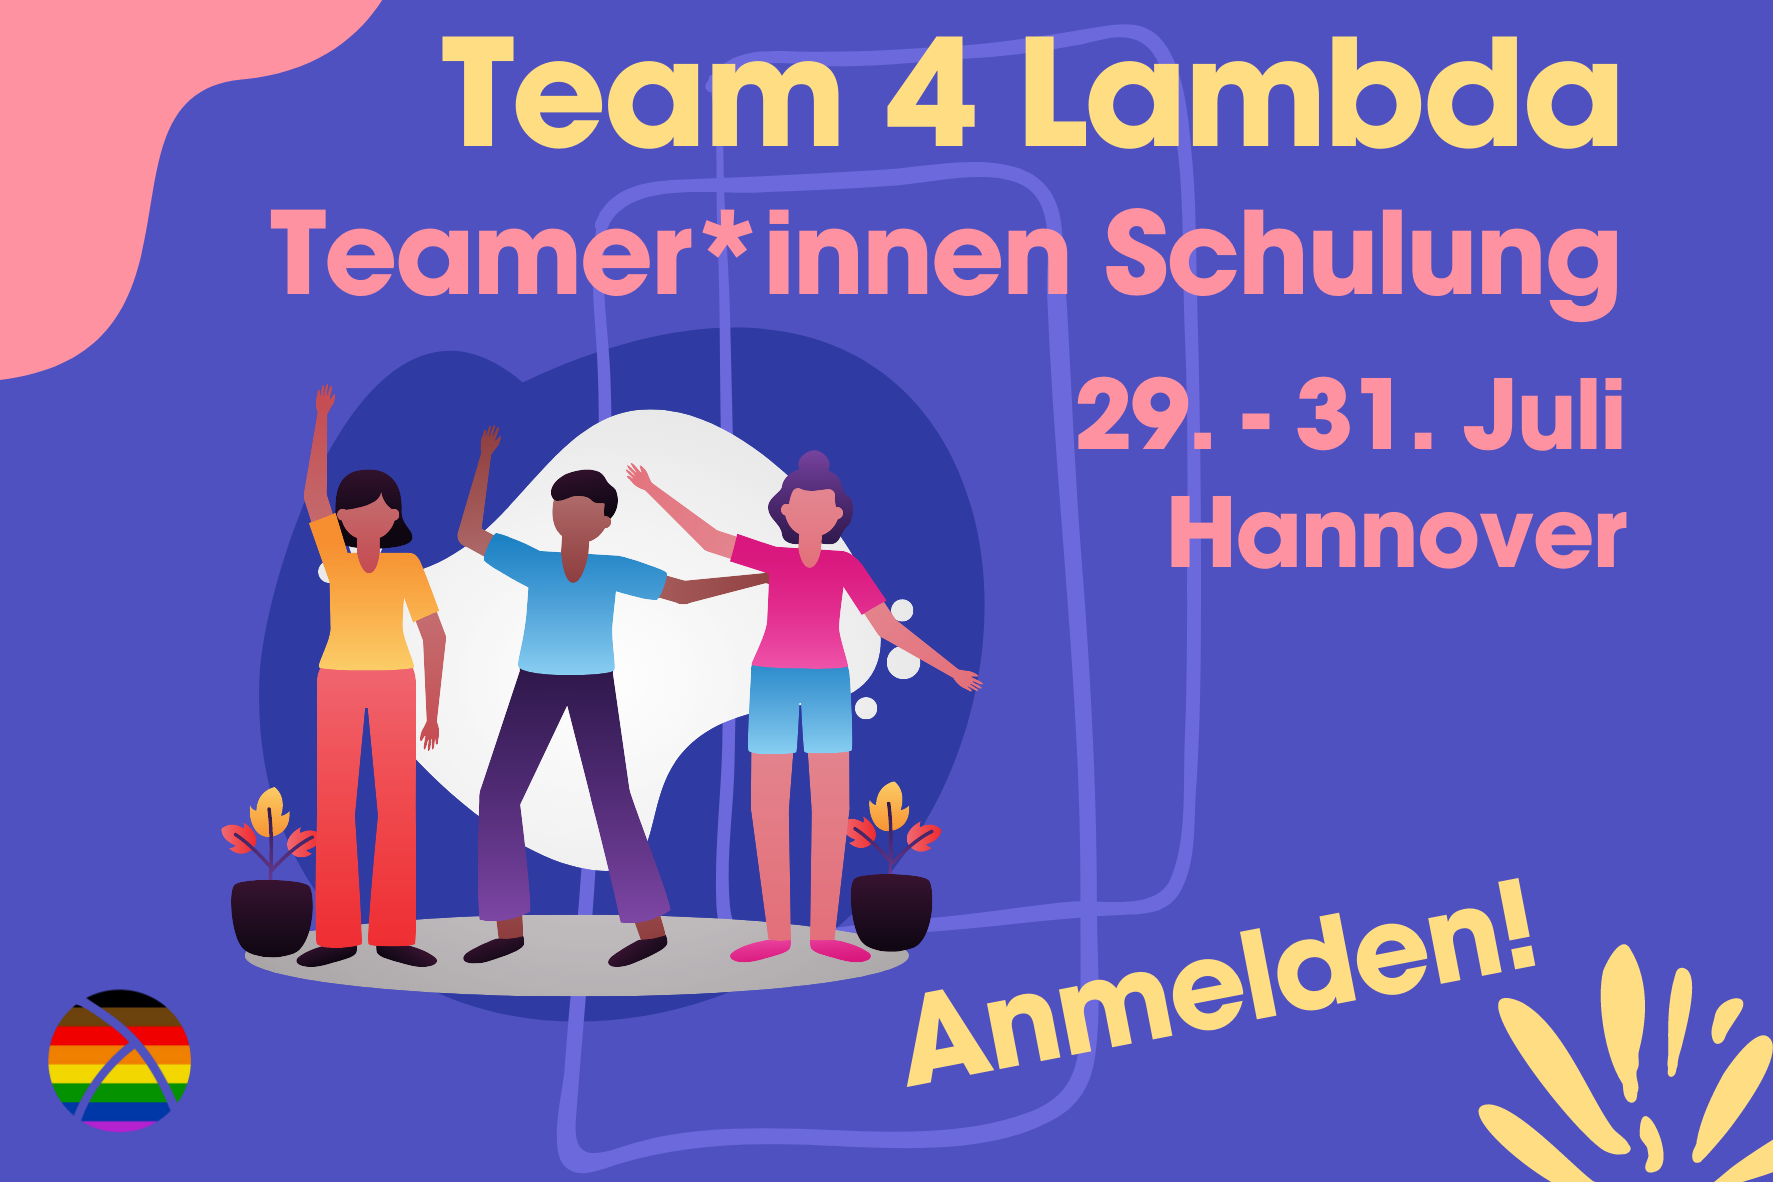 Team 4 Lambda. Werde Teamer*in bei uns!